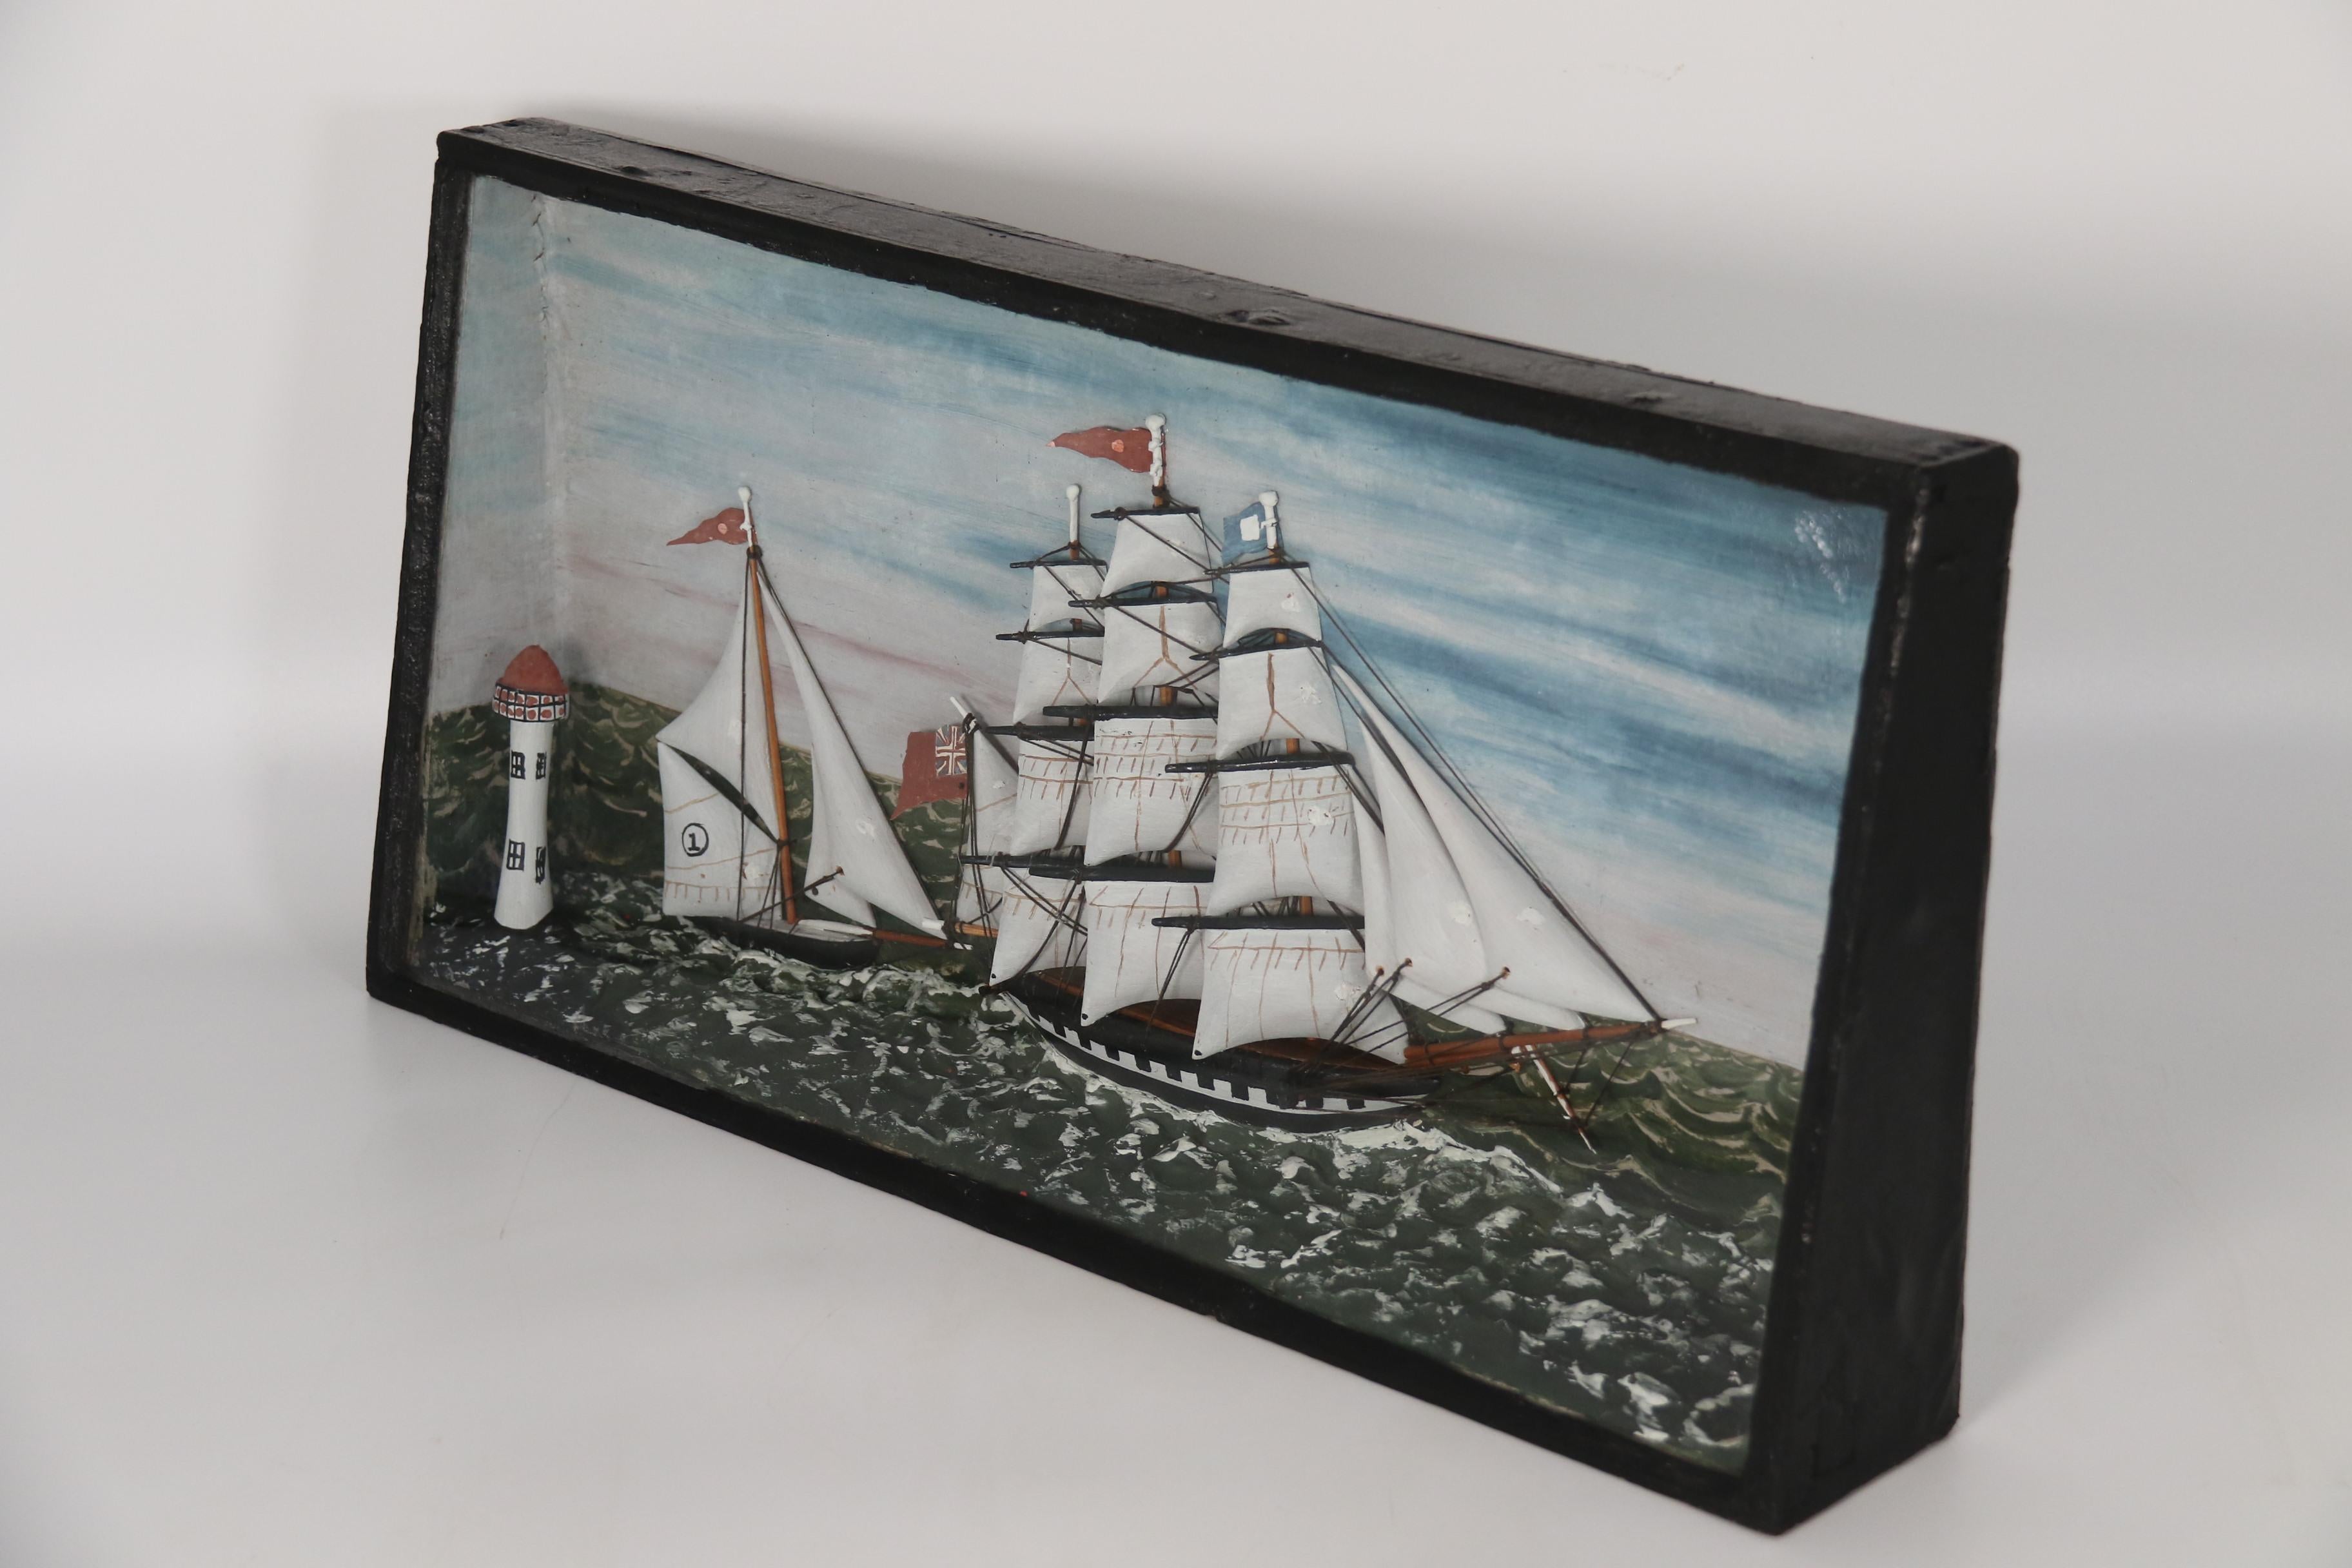 Ce très beau diorama du milieu du XIXe siècle montre une vue en mer d'un grand navire anglais à trois mâts poursuivi dans une course par un yacht à un seul mât, plus petit et plus rapide. Tous deux passent devant un phare qui se trouve au premier